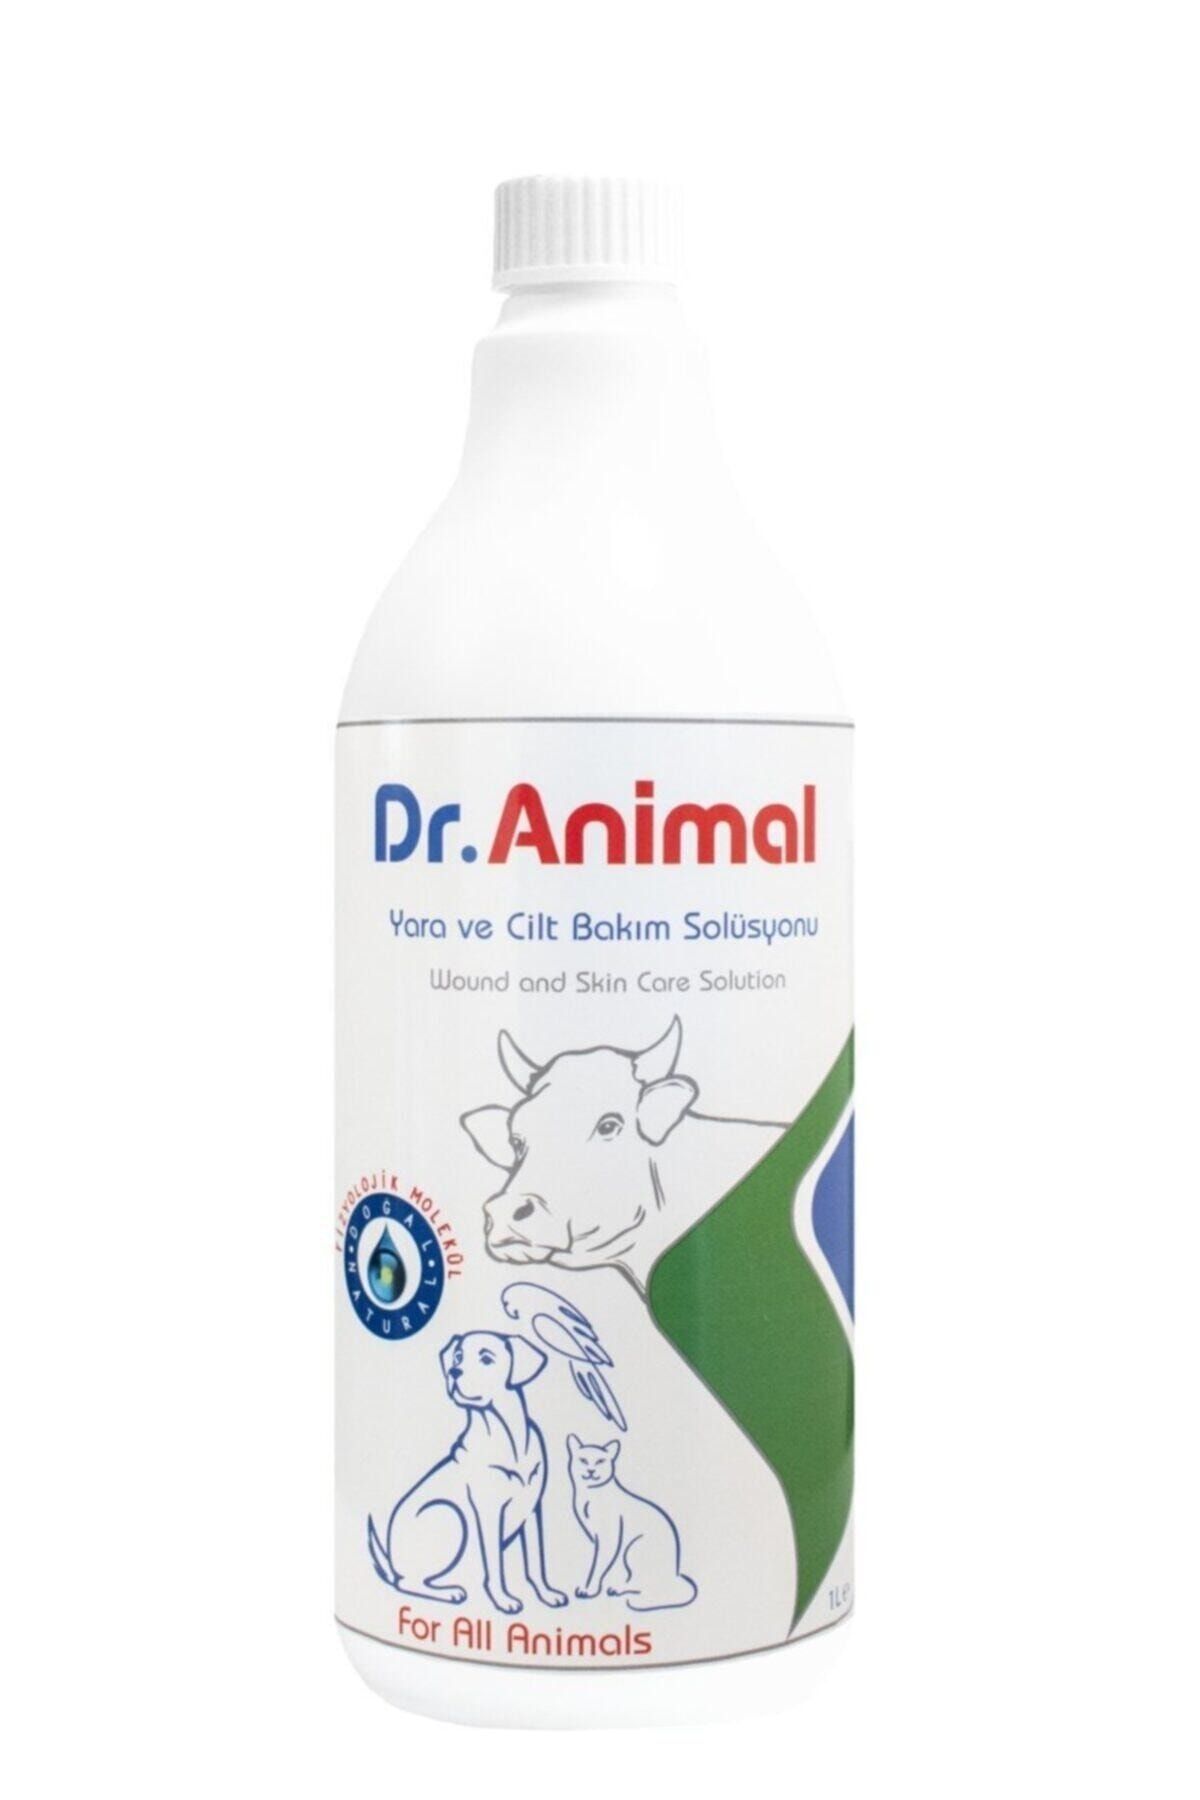 Dr. Animal Yara Ve Cilt Bakım Solüsyonu 1 Litre